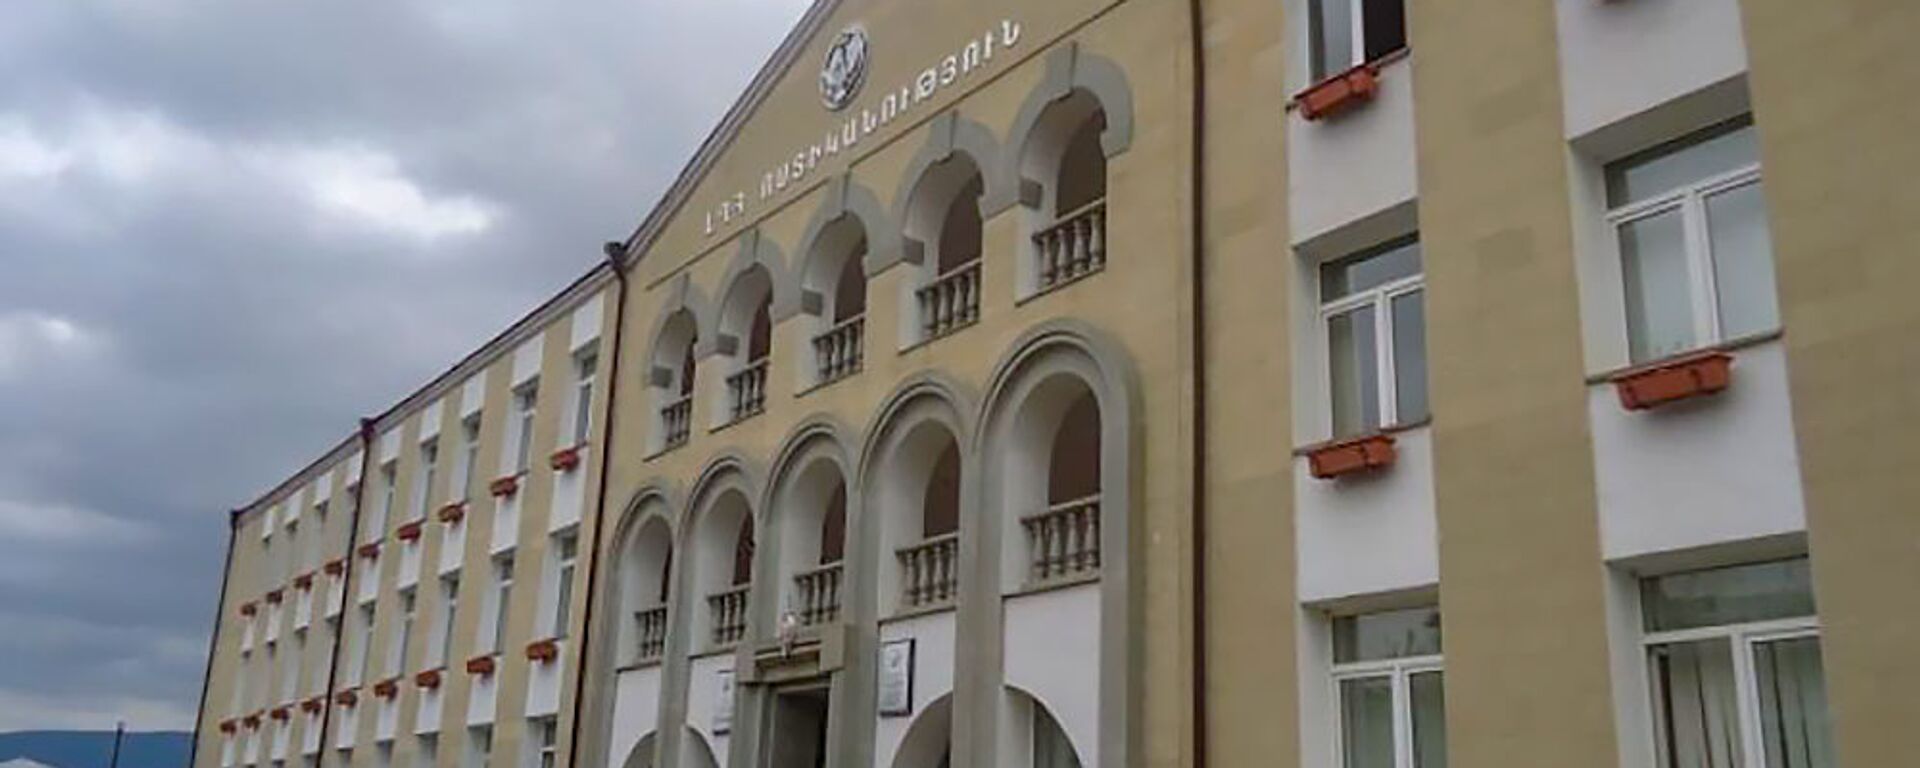 Здание полиции Карабаха - Sputnik Армения, 1920, 22.04.2021